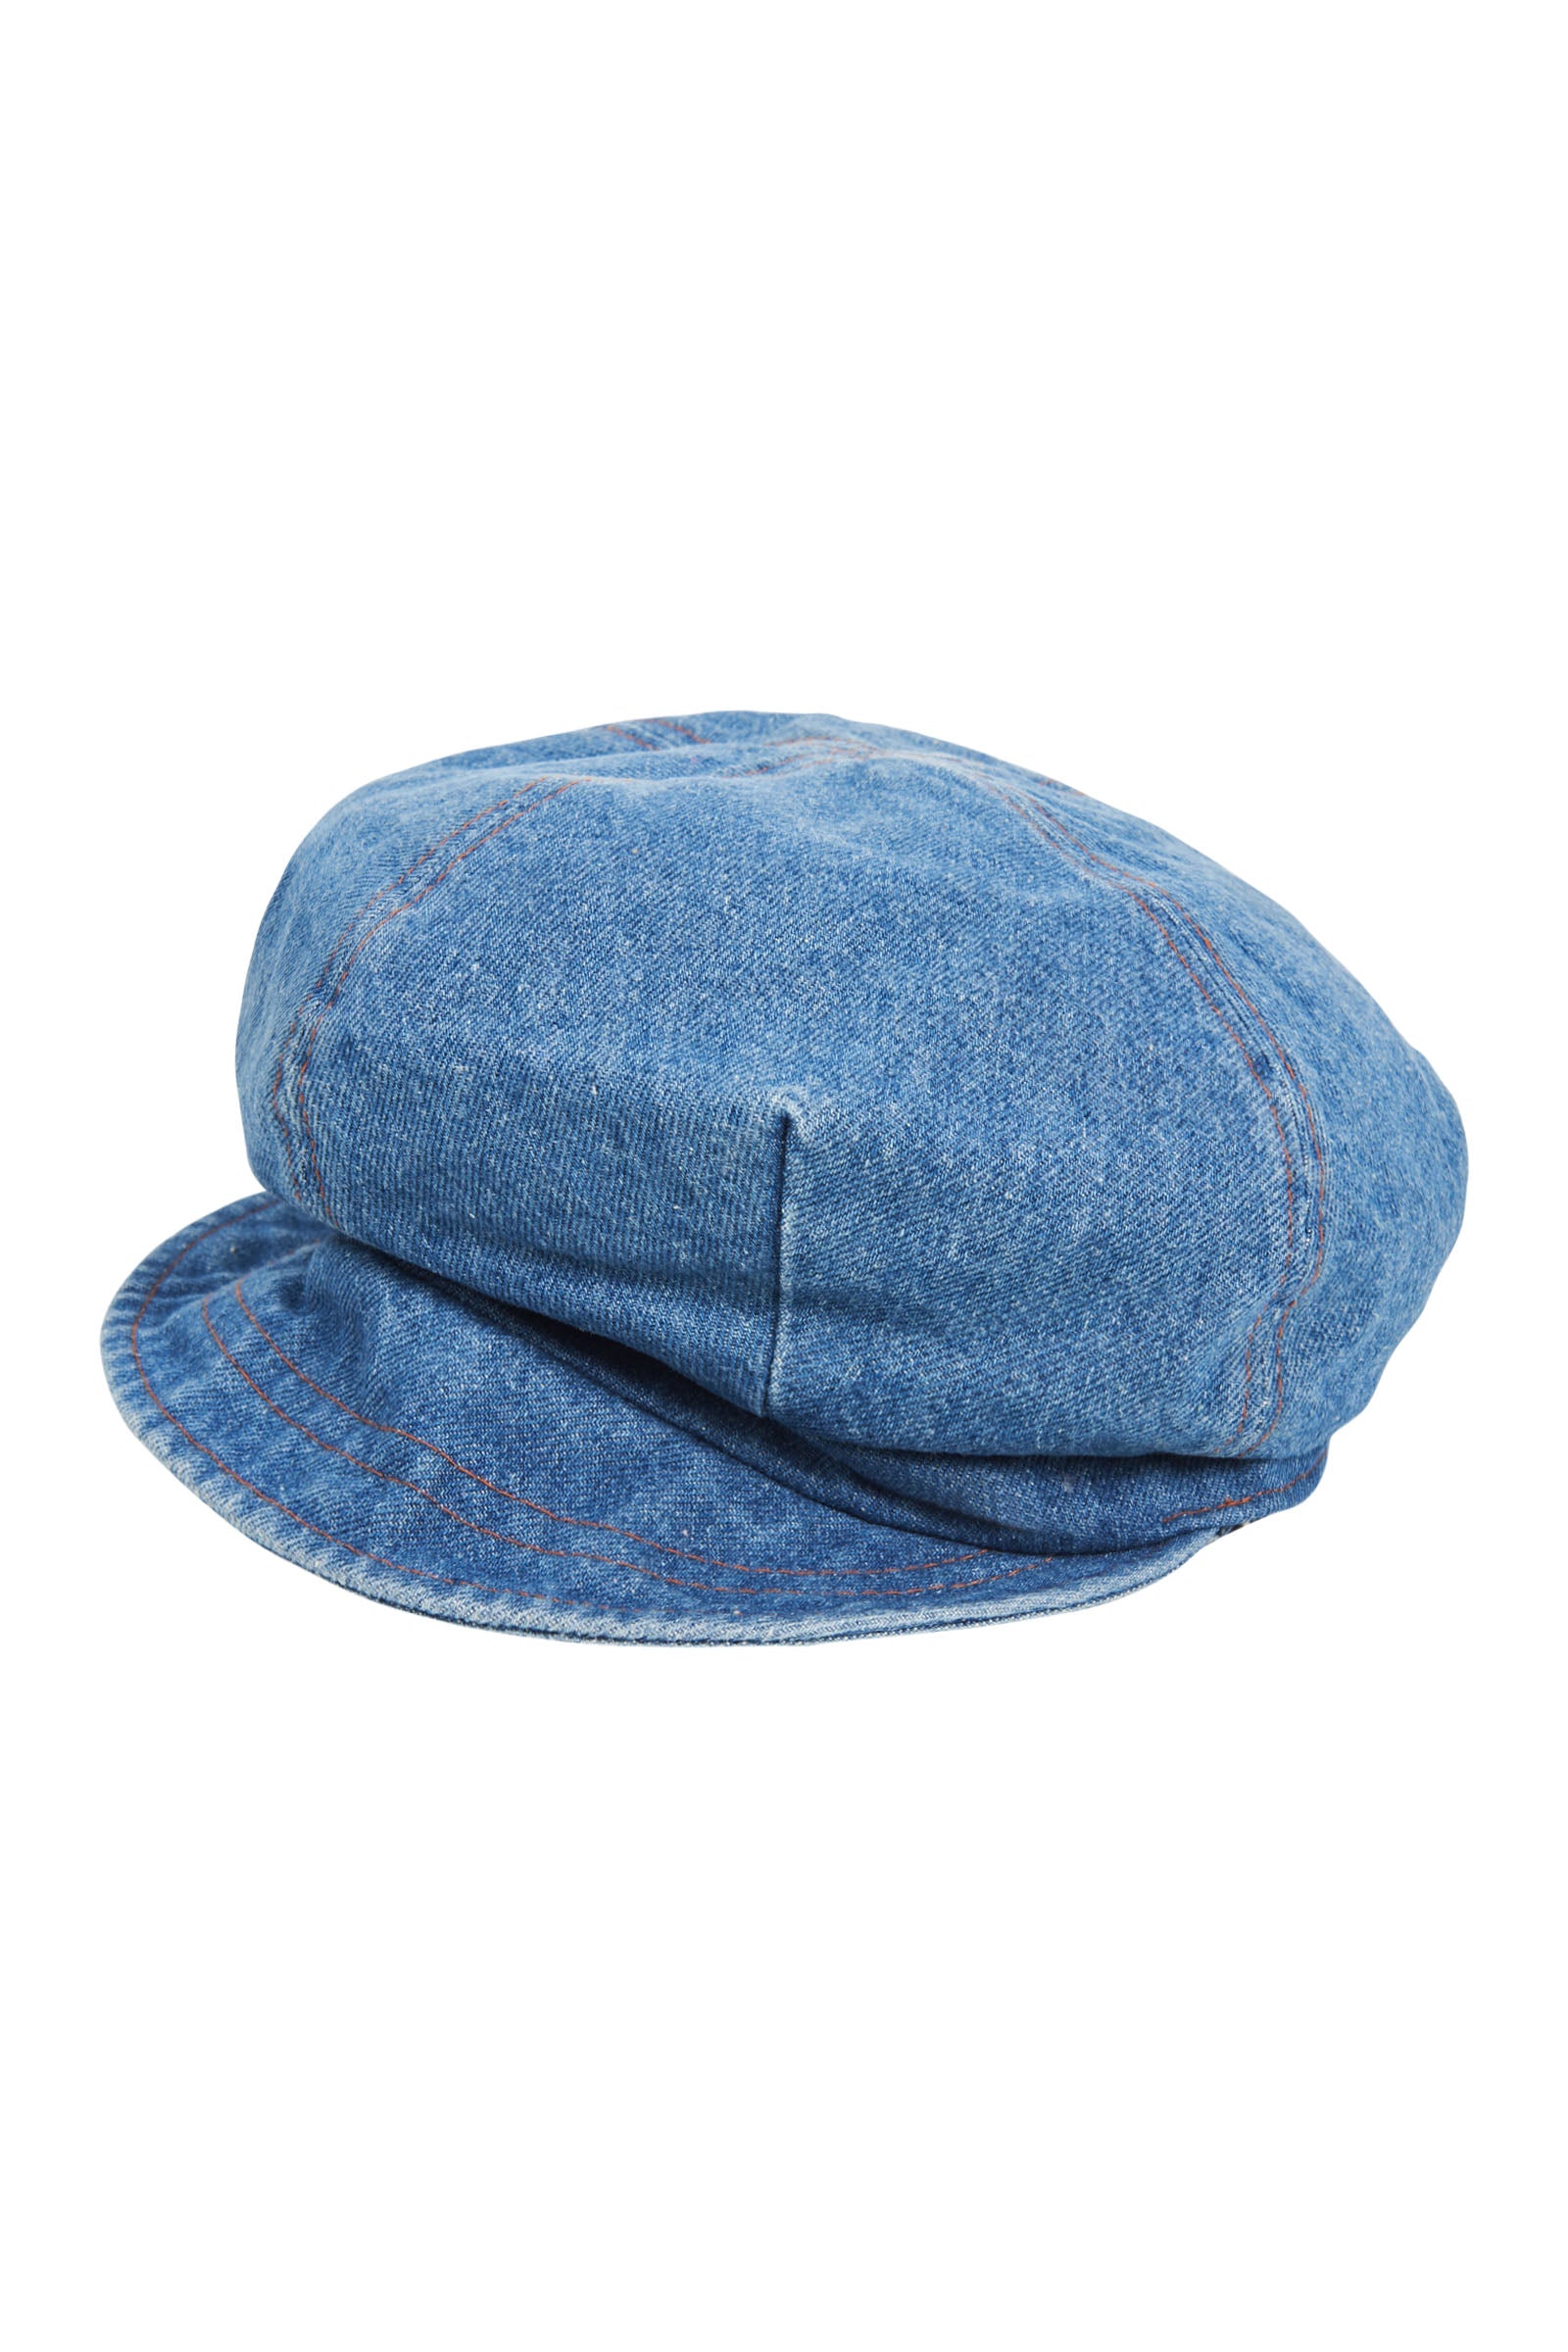 Urban Cap - Denim - Isle of Mine Hat